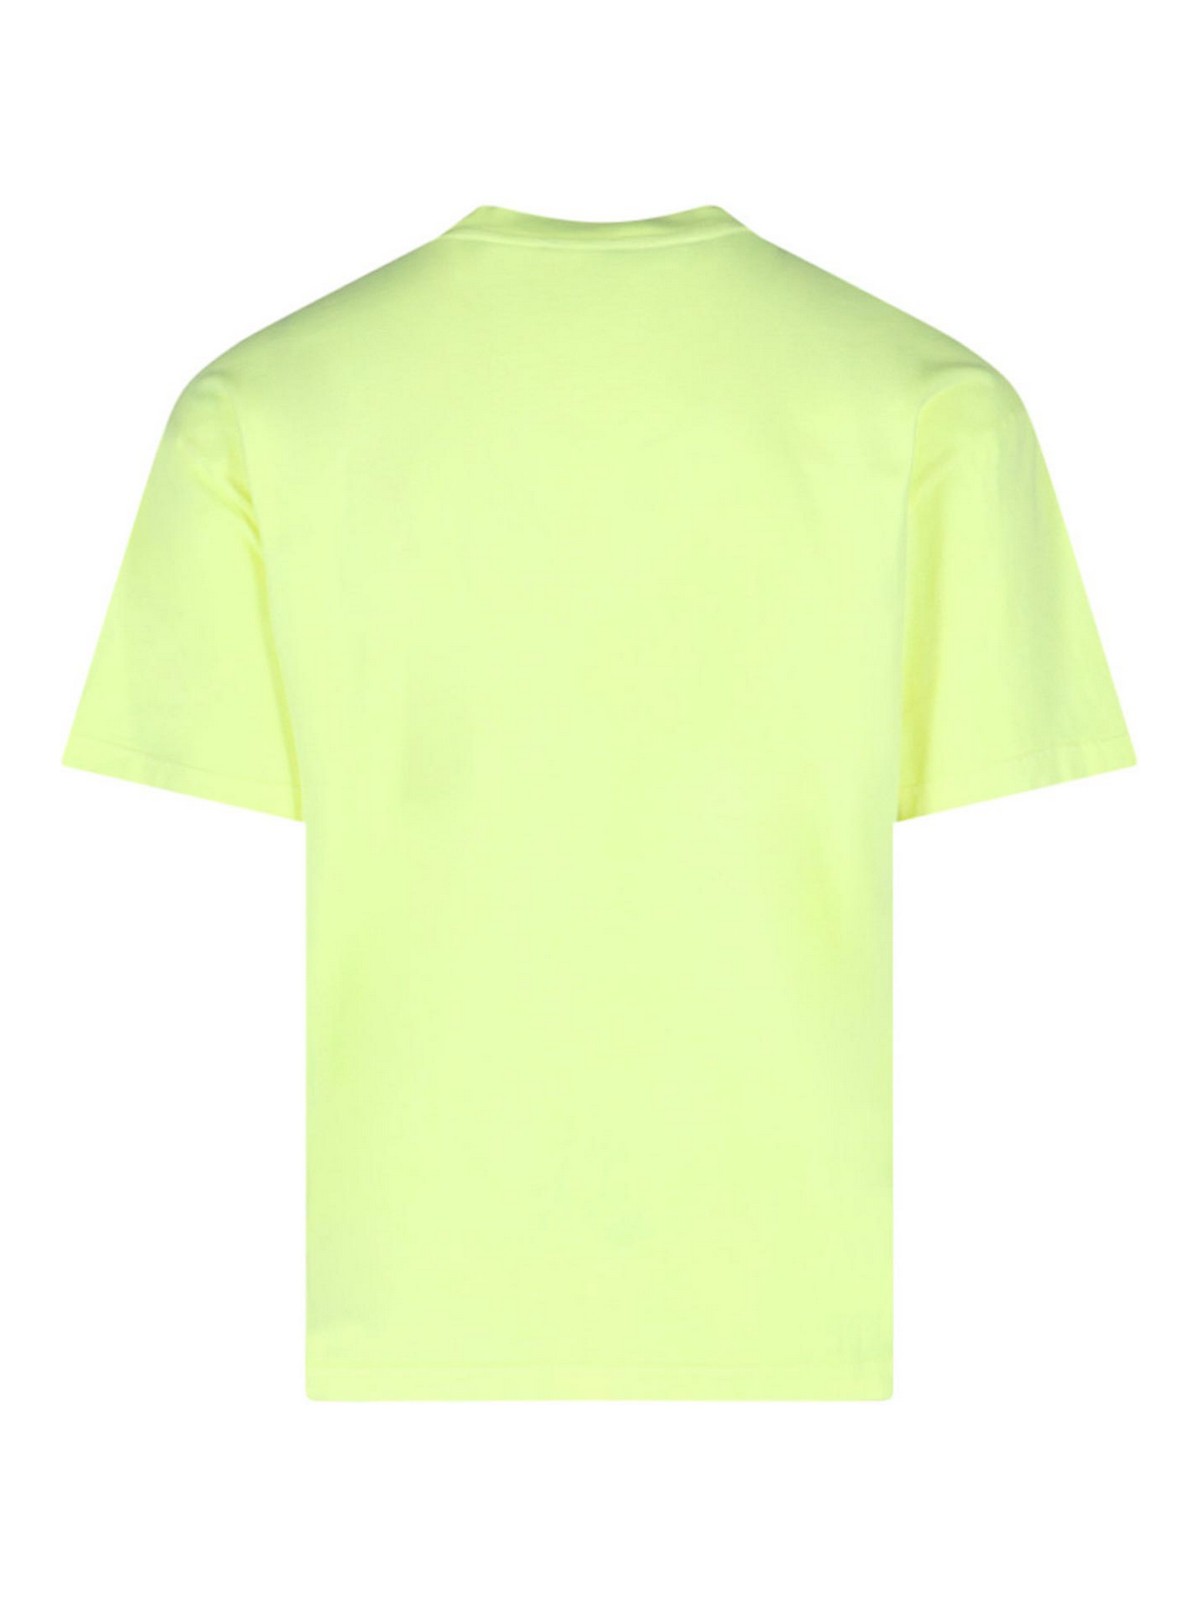 Shop Apc T-shirt Logo In Yellow